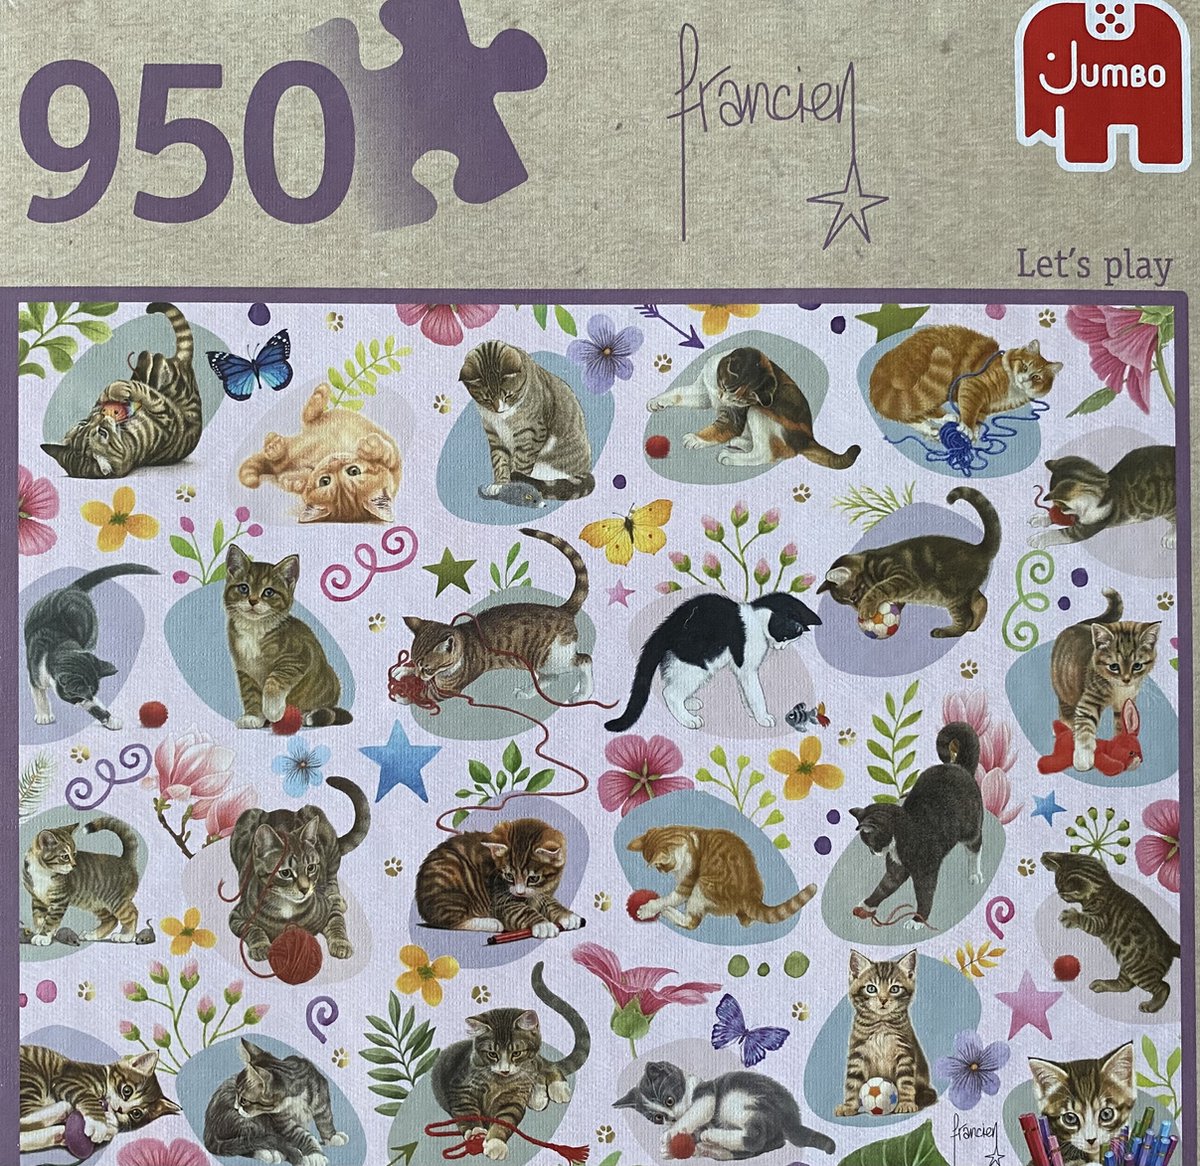 Jumbo katten Letz's play Francien puzzel 950 stukjes